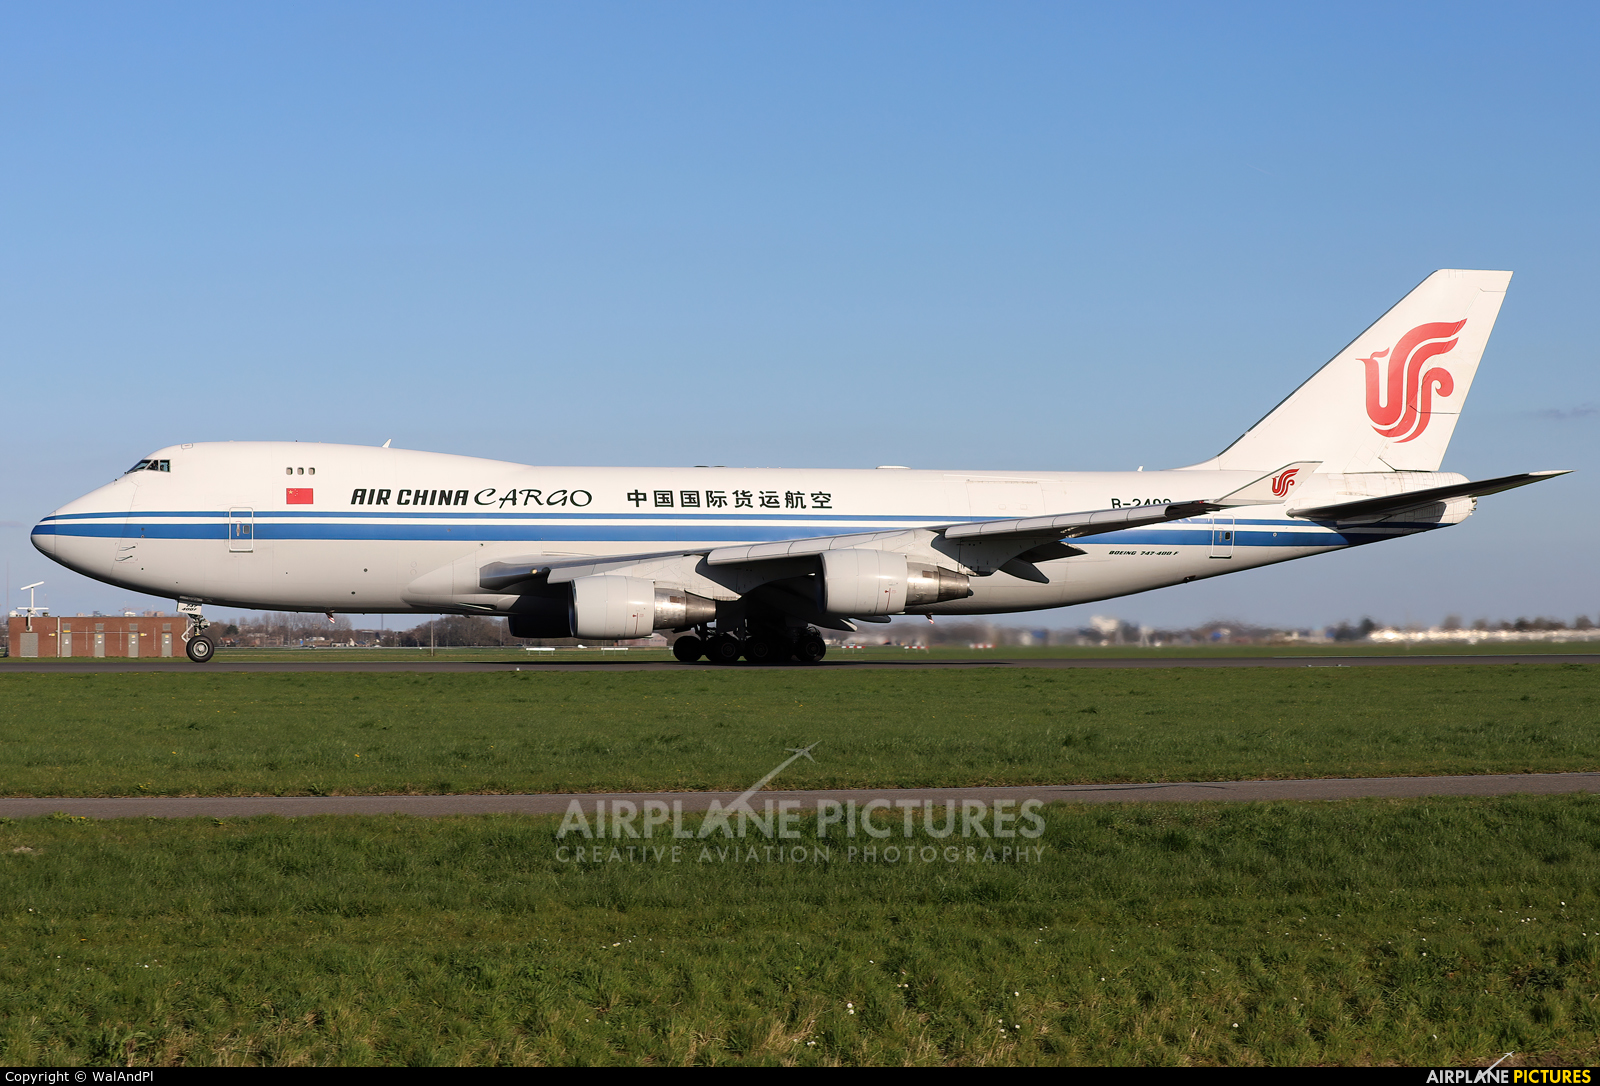 Air China Cargo B-2409 aircraft at Amsterdam - Schiphol